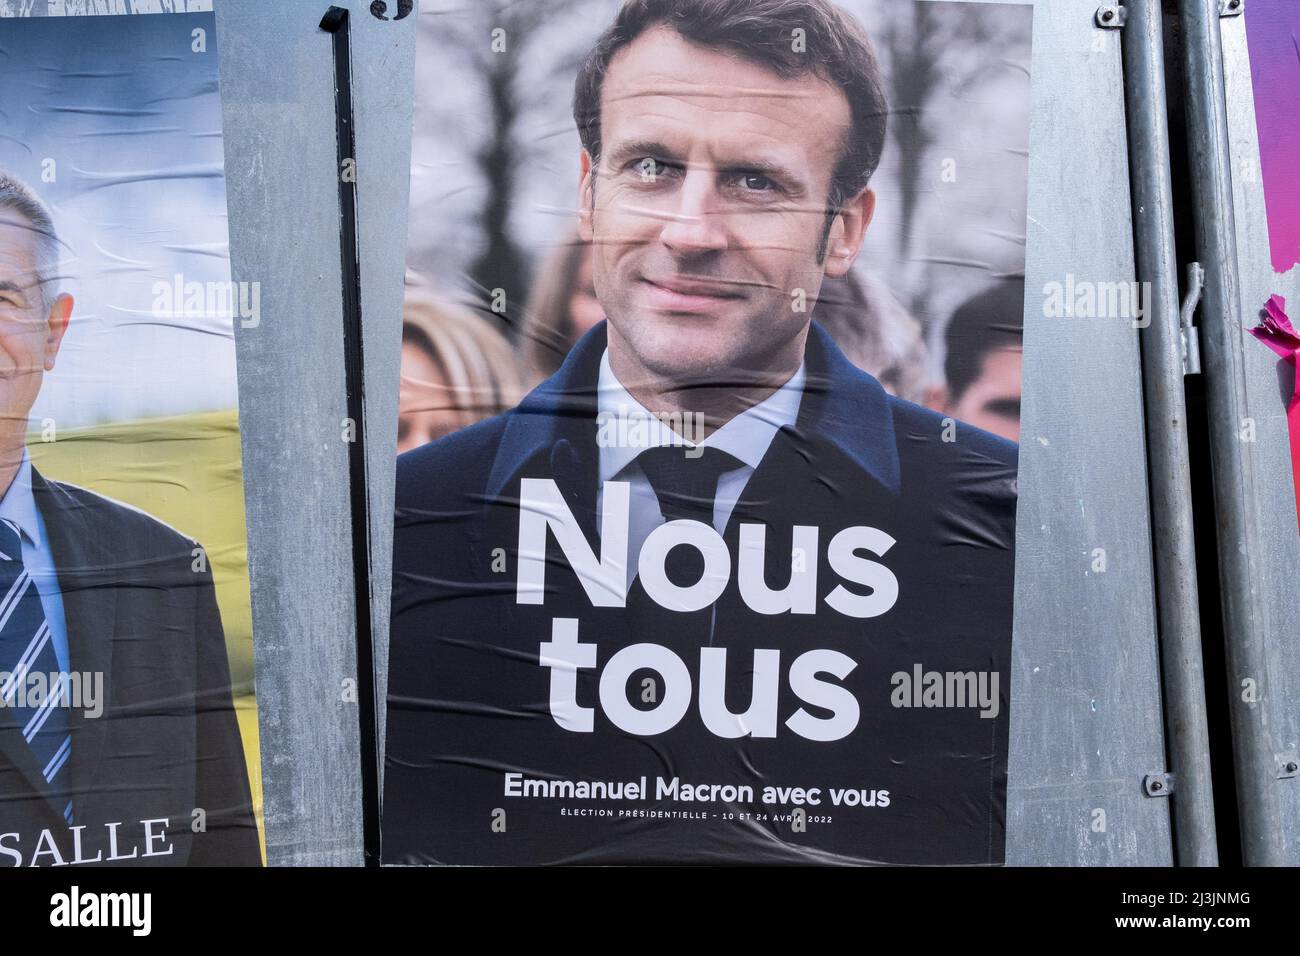 Affiches officielles de la campagne présidentielle dans la commune de Dinan en Bretagne. France. Banque D'Images